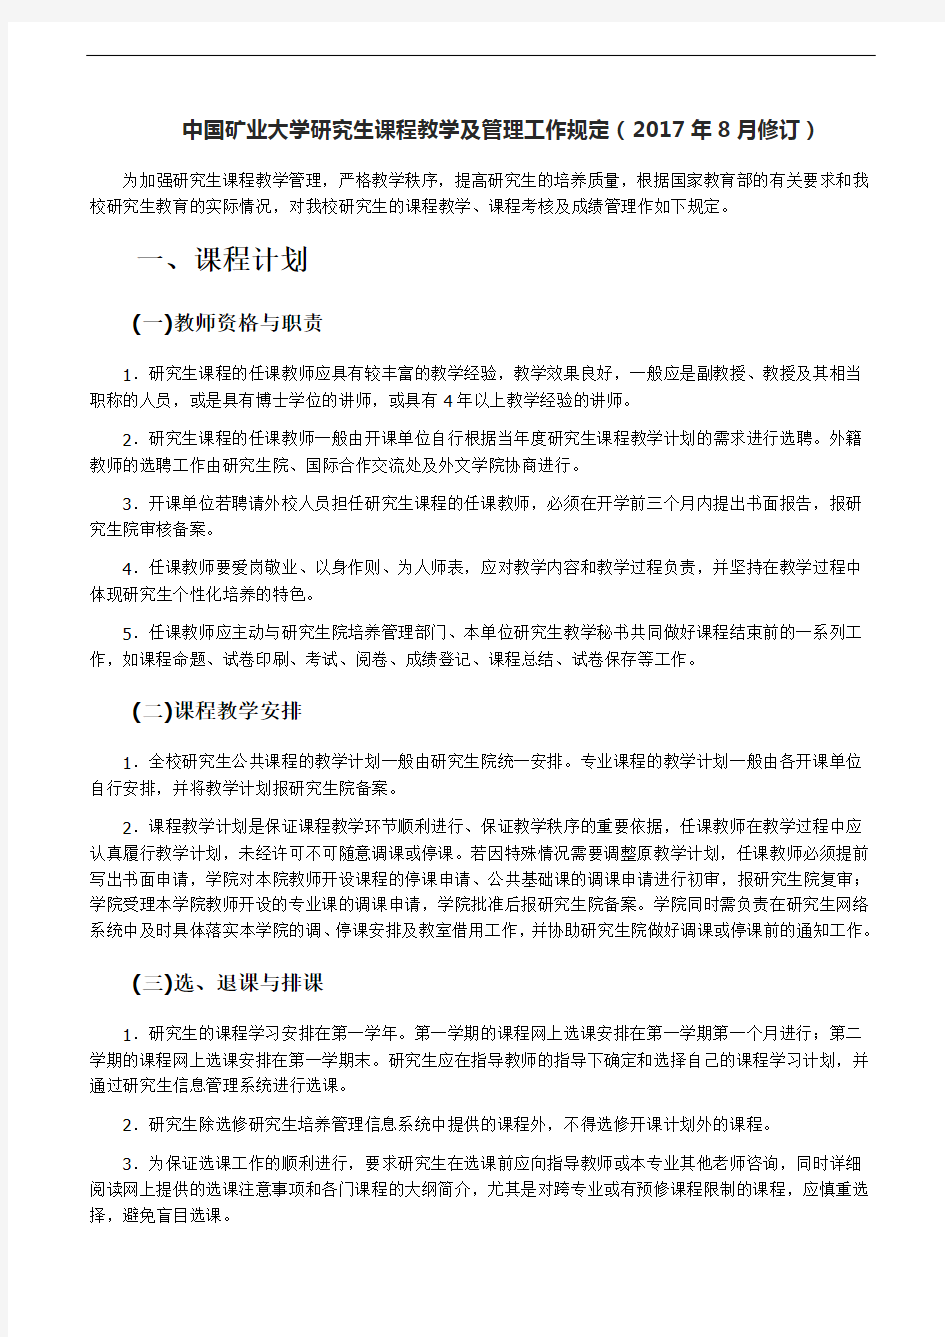 中国矿业大学研究生课程教学及管理工作规定(2017年8月修订)